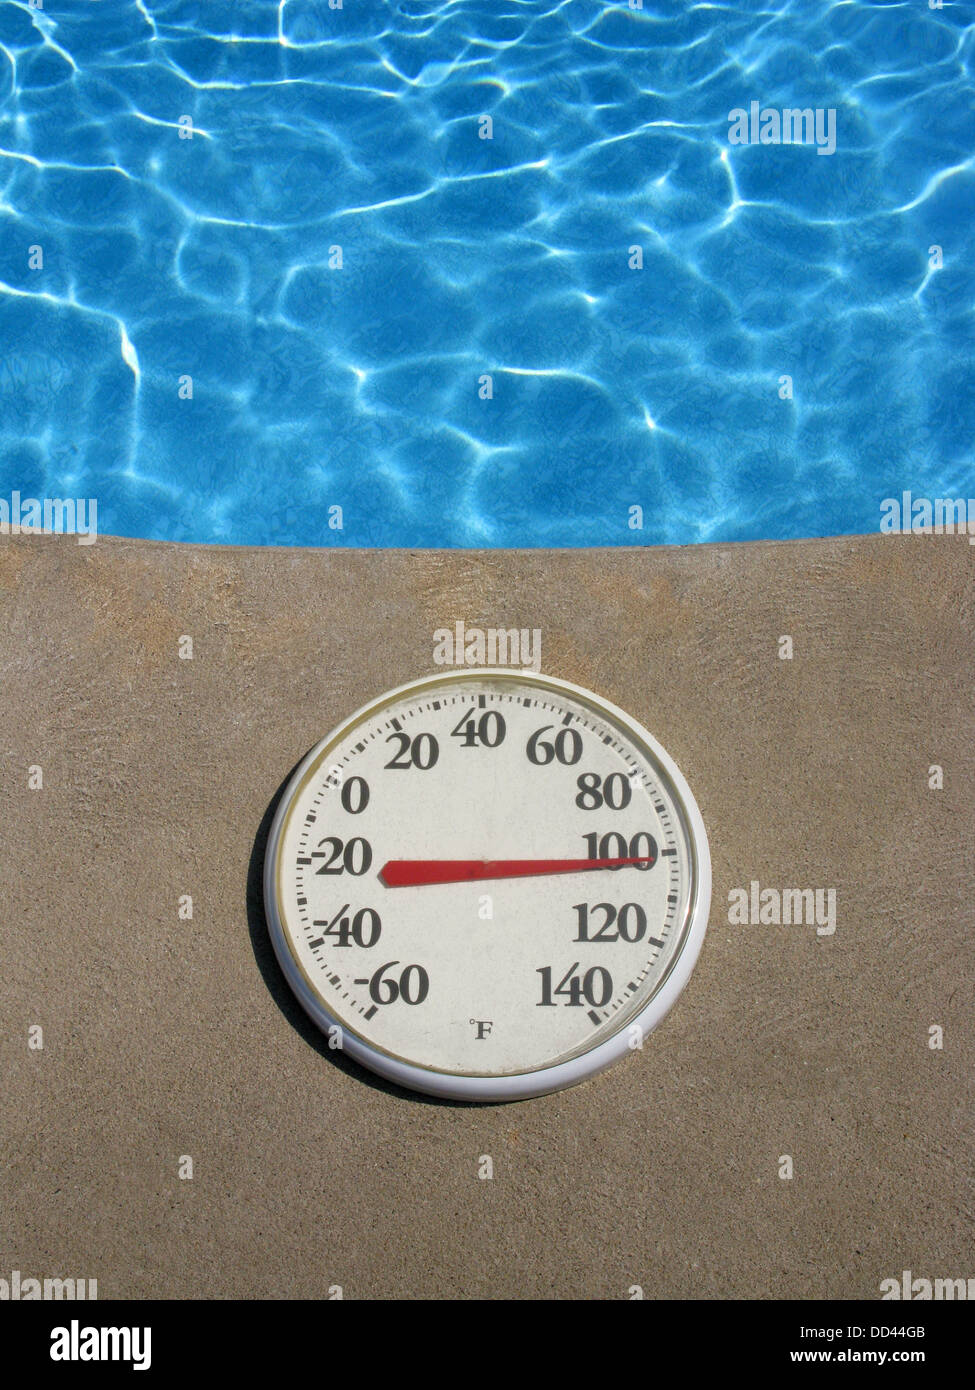 Un termómetro de plástico redondo mostrando temperatura caliente. Objeto está junto a una piscina de agua azul Foto de stock